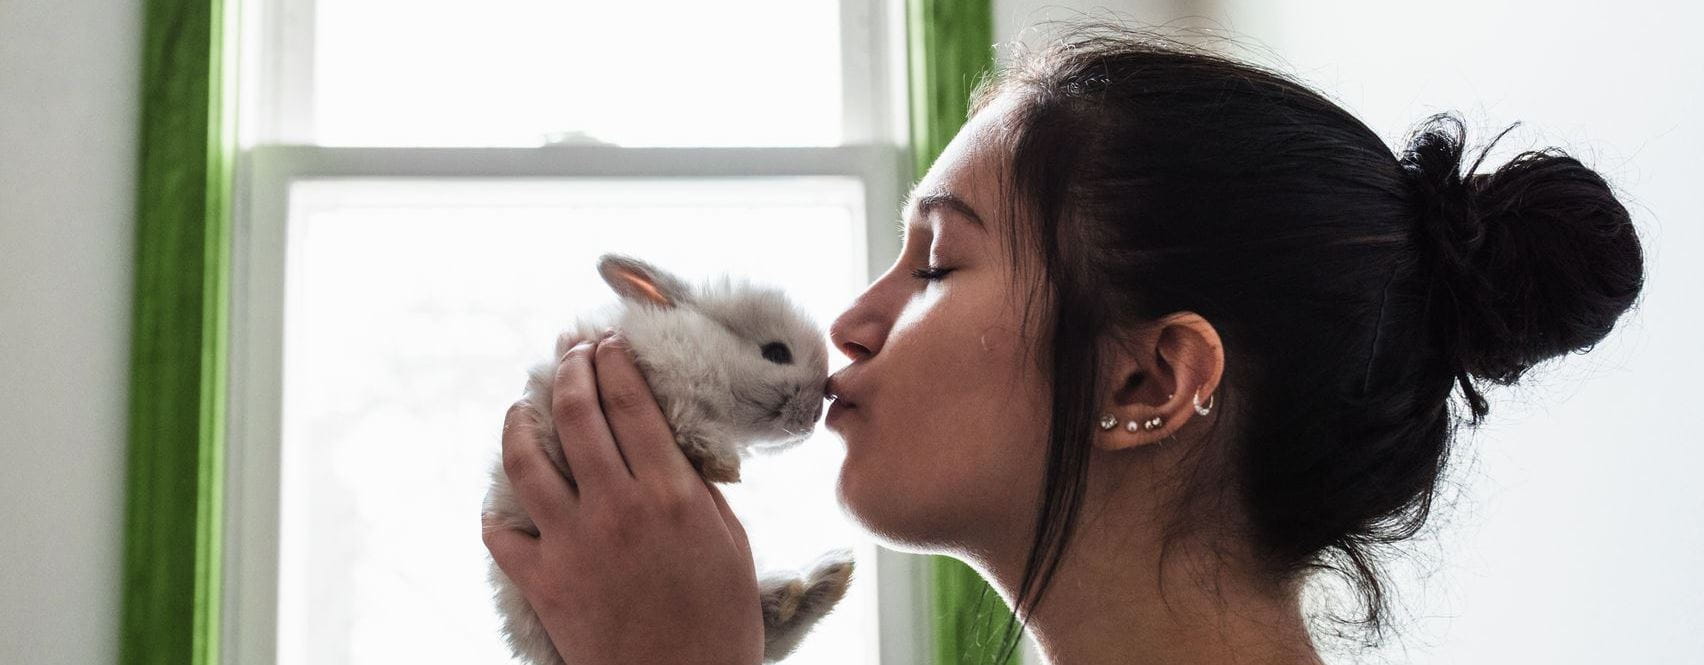 Kobieta całująca króliczka